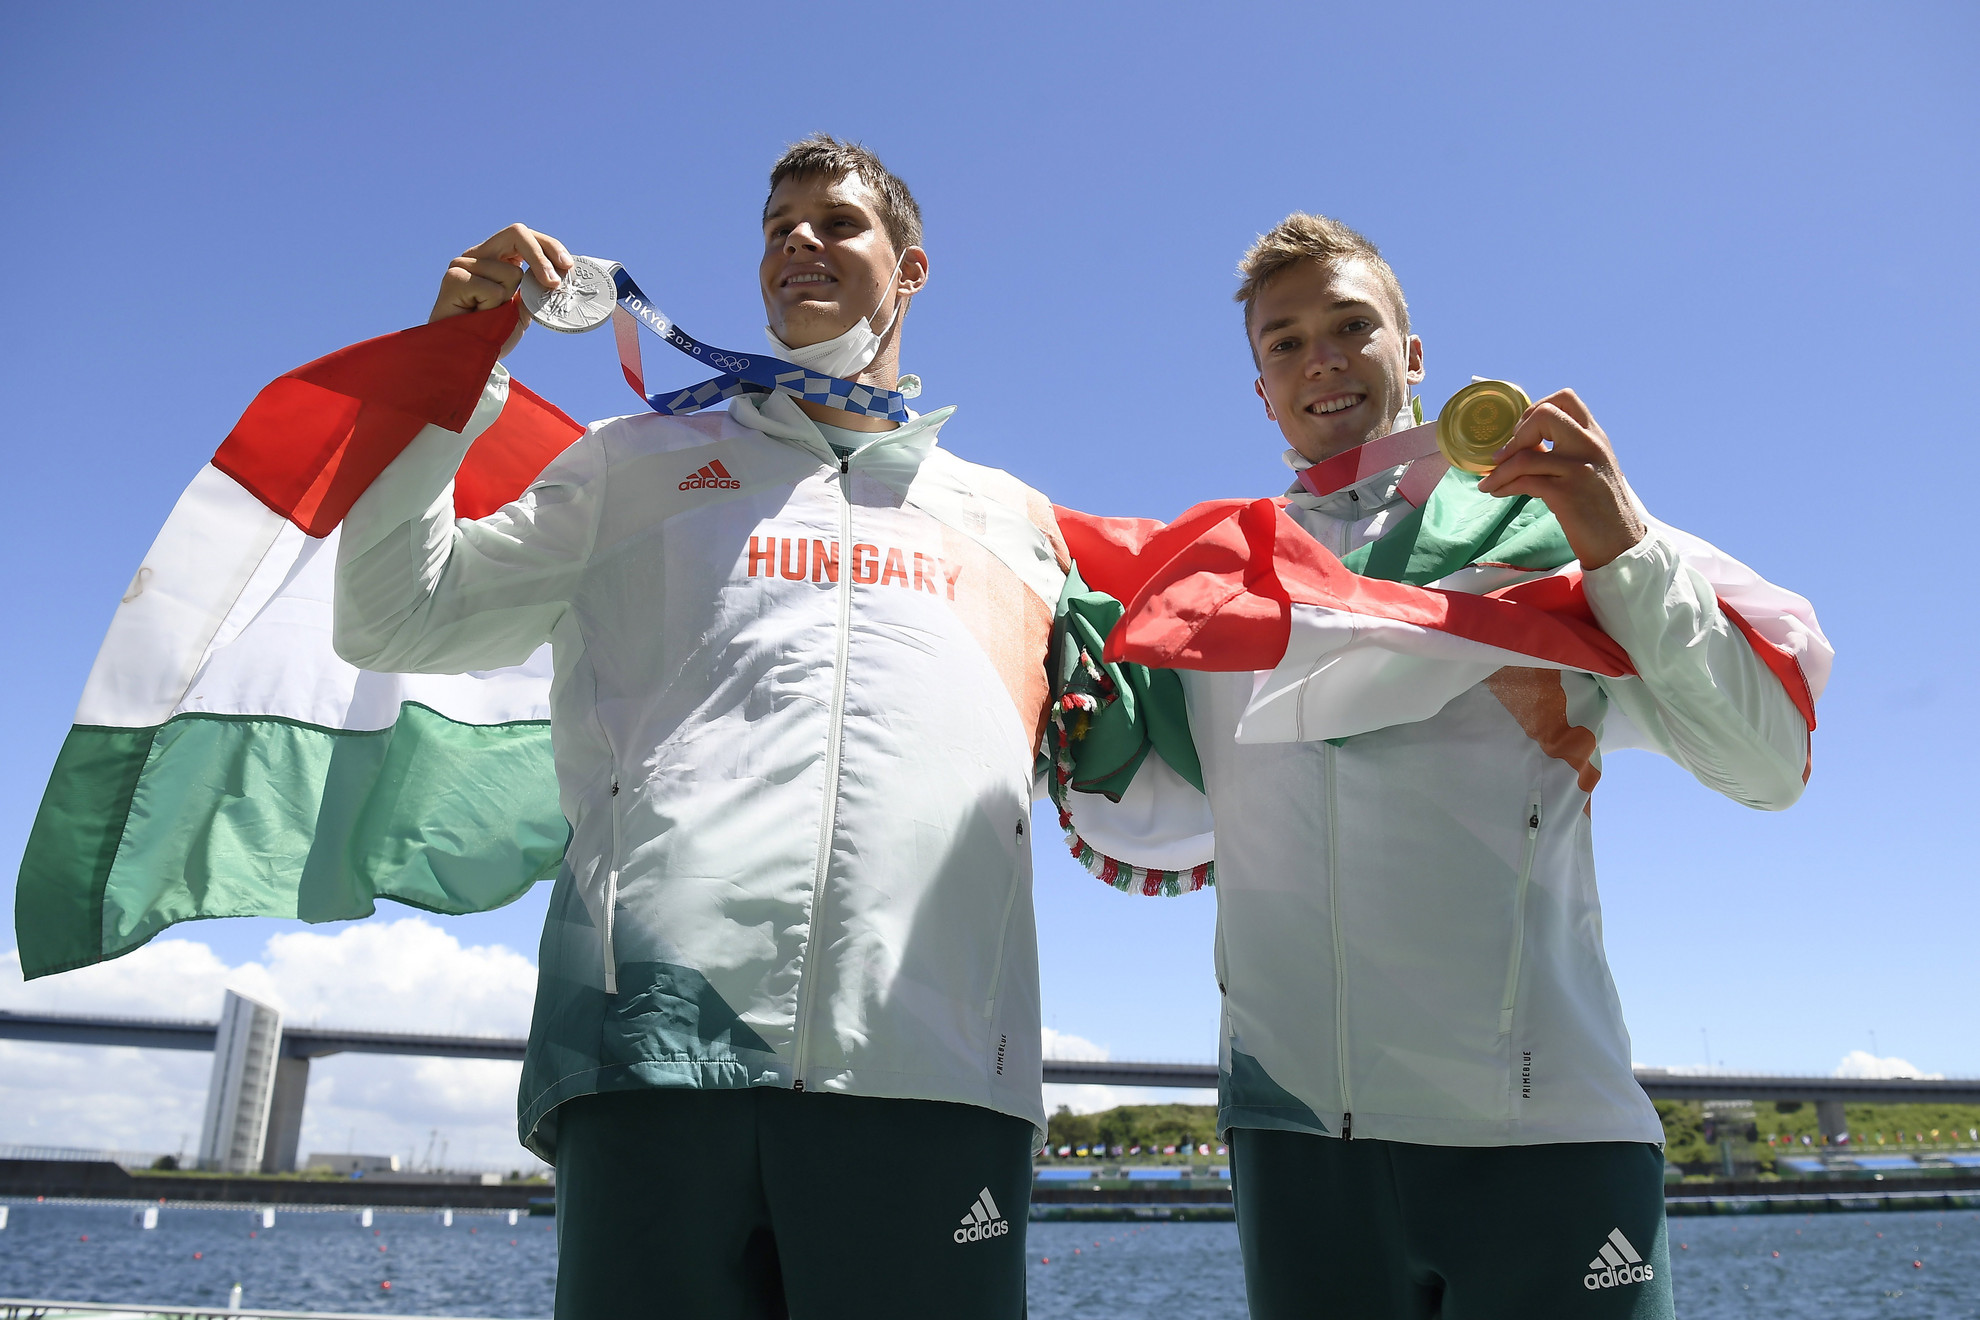 Az aranyérmes Kopasz Bálint (j) és az ezüstérmes Varga Ádám a férfi kajak egyesek 1000 méteres versenyének eredményhirdetésén a világméretű koronavírus-járvány miatt 2021-re halasztott 2020-as tokiói nyári olimpián a Sea Forest Kajak-kenu Pályán 2021. augusztus 3-án